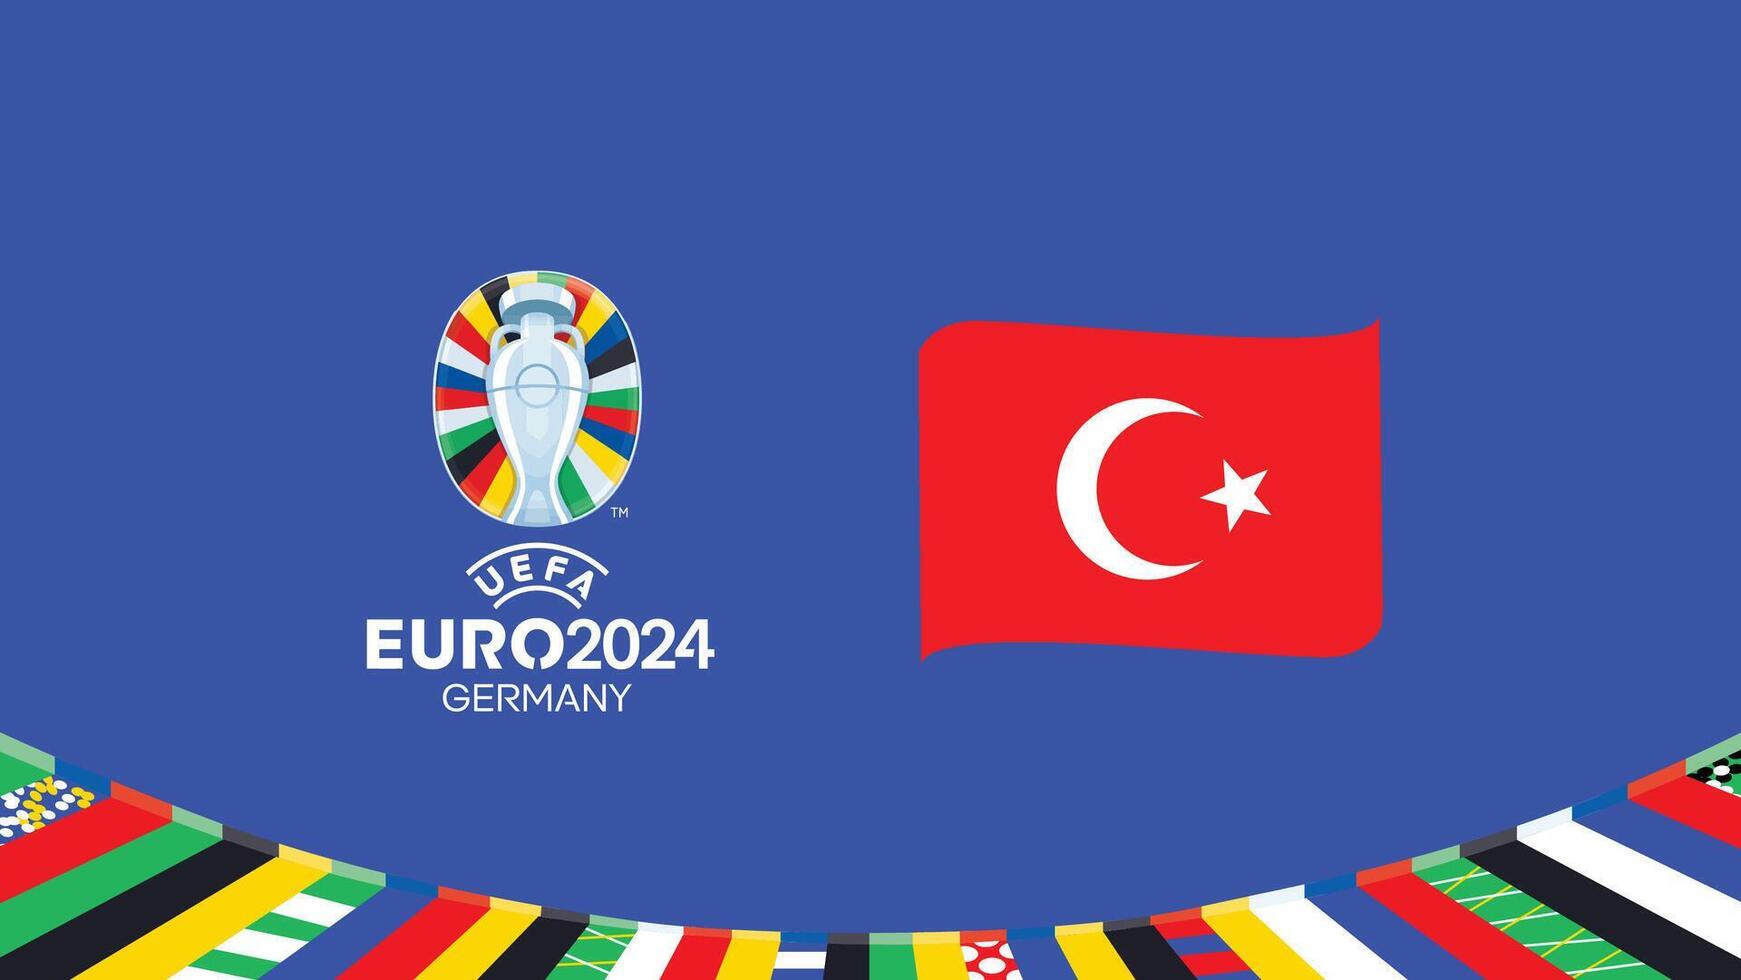 euro 2024 turkiye emblem band lag design med officiell symbol logotyp abstrakt länder europeisk fotboll illustration vektor